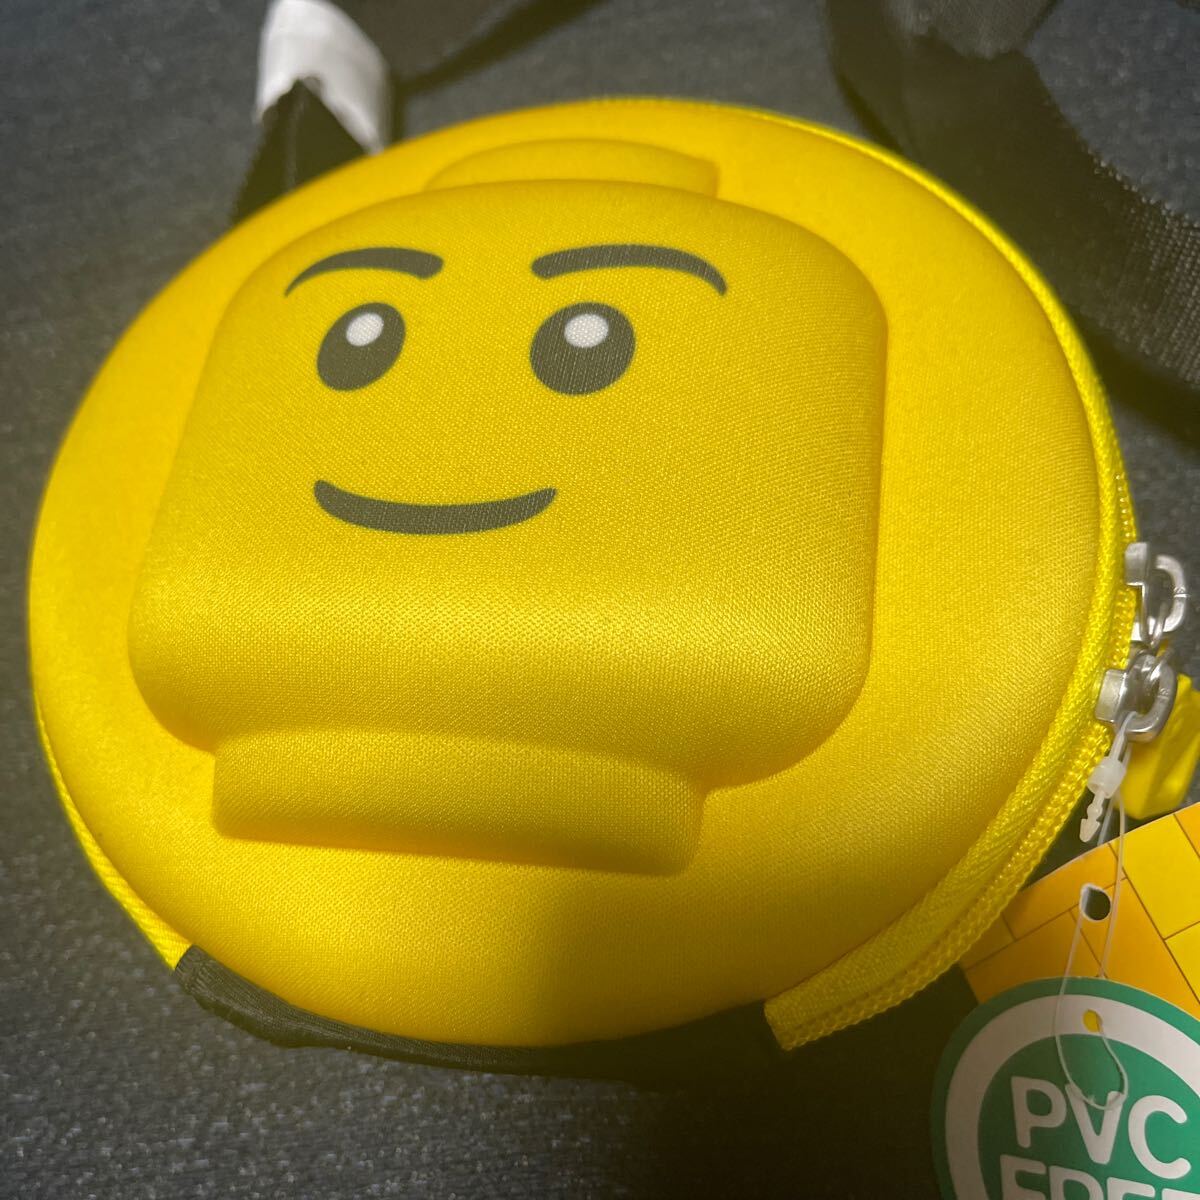  Lego Land сумка на плечо желтый небольшая сумочка сумка LEGO не использовался с биркой 